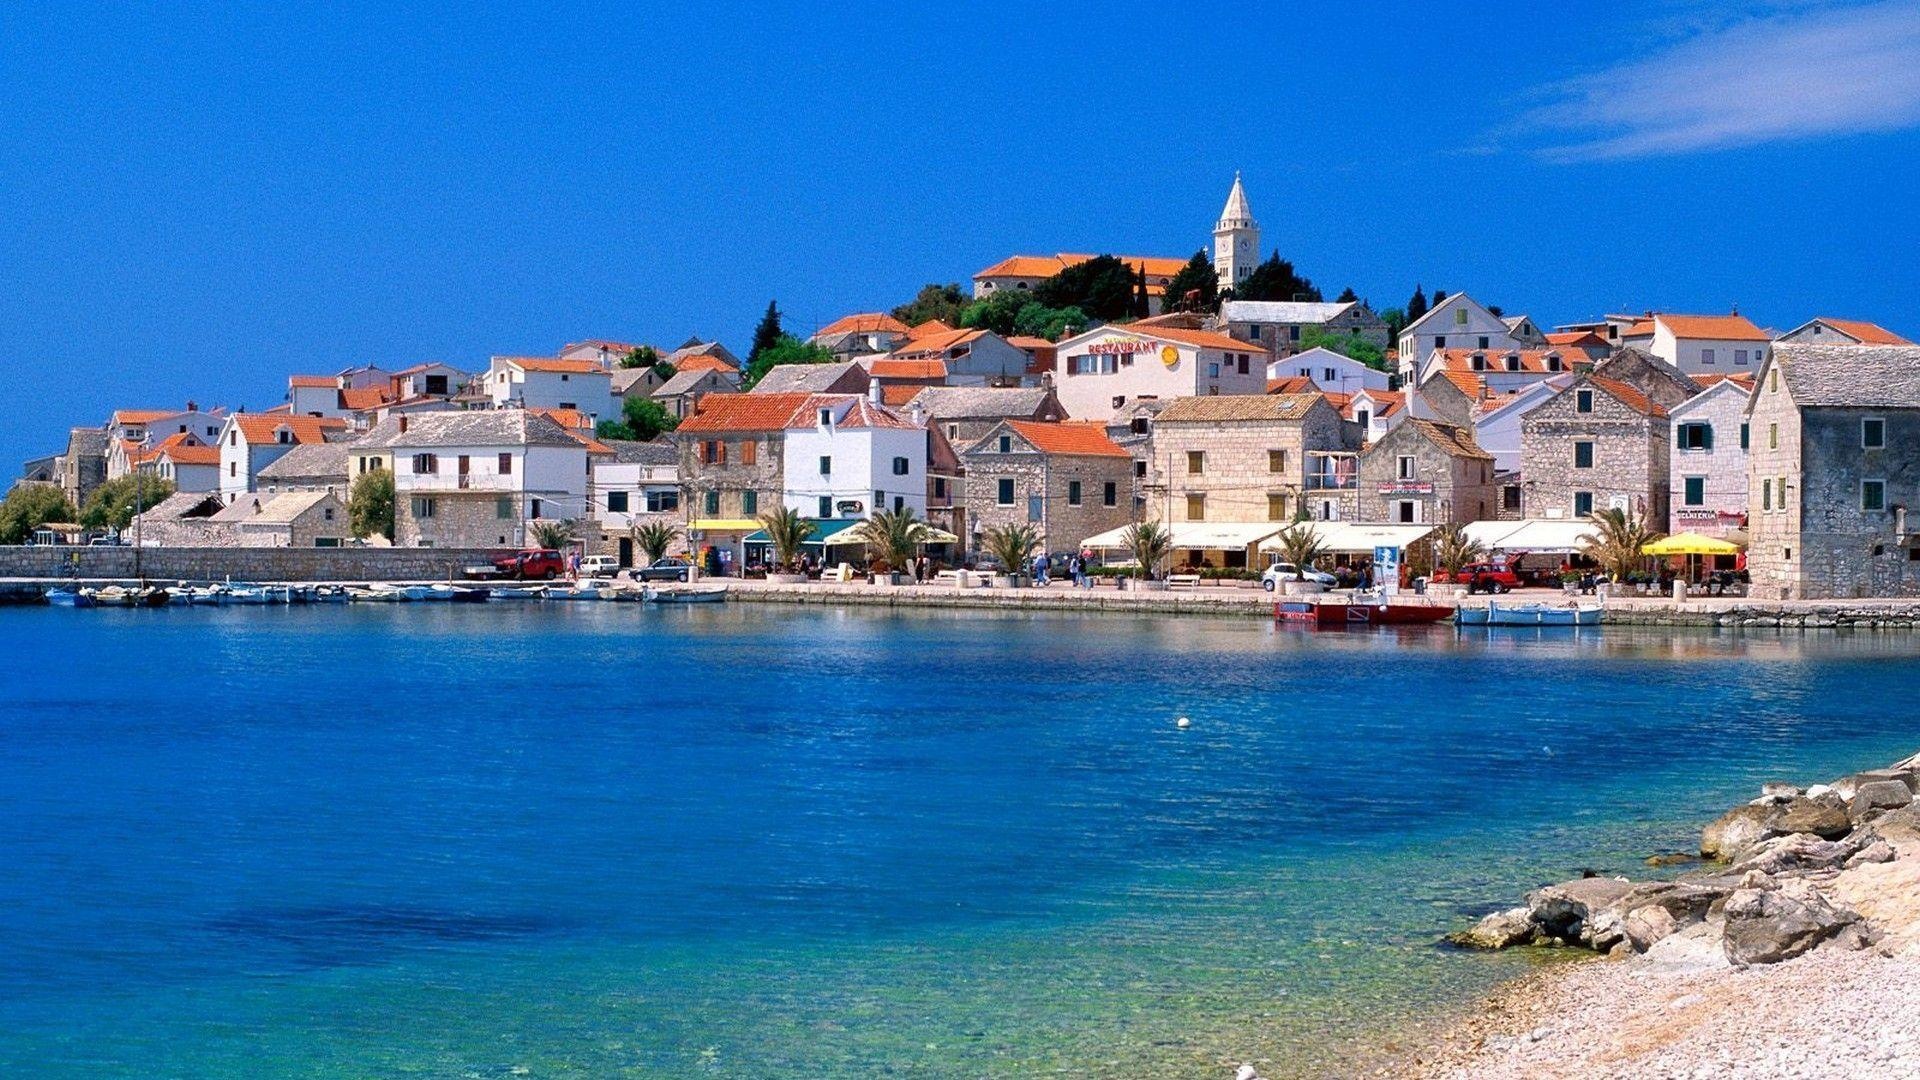 Croatia: Croatian beach, Coastline, Turquoise waters. 1920x1080 Full HD Background.